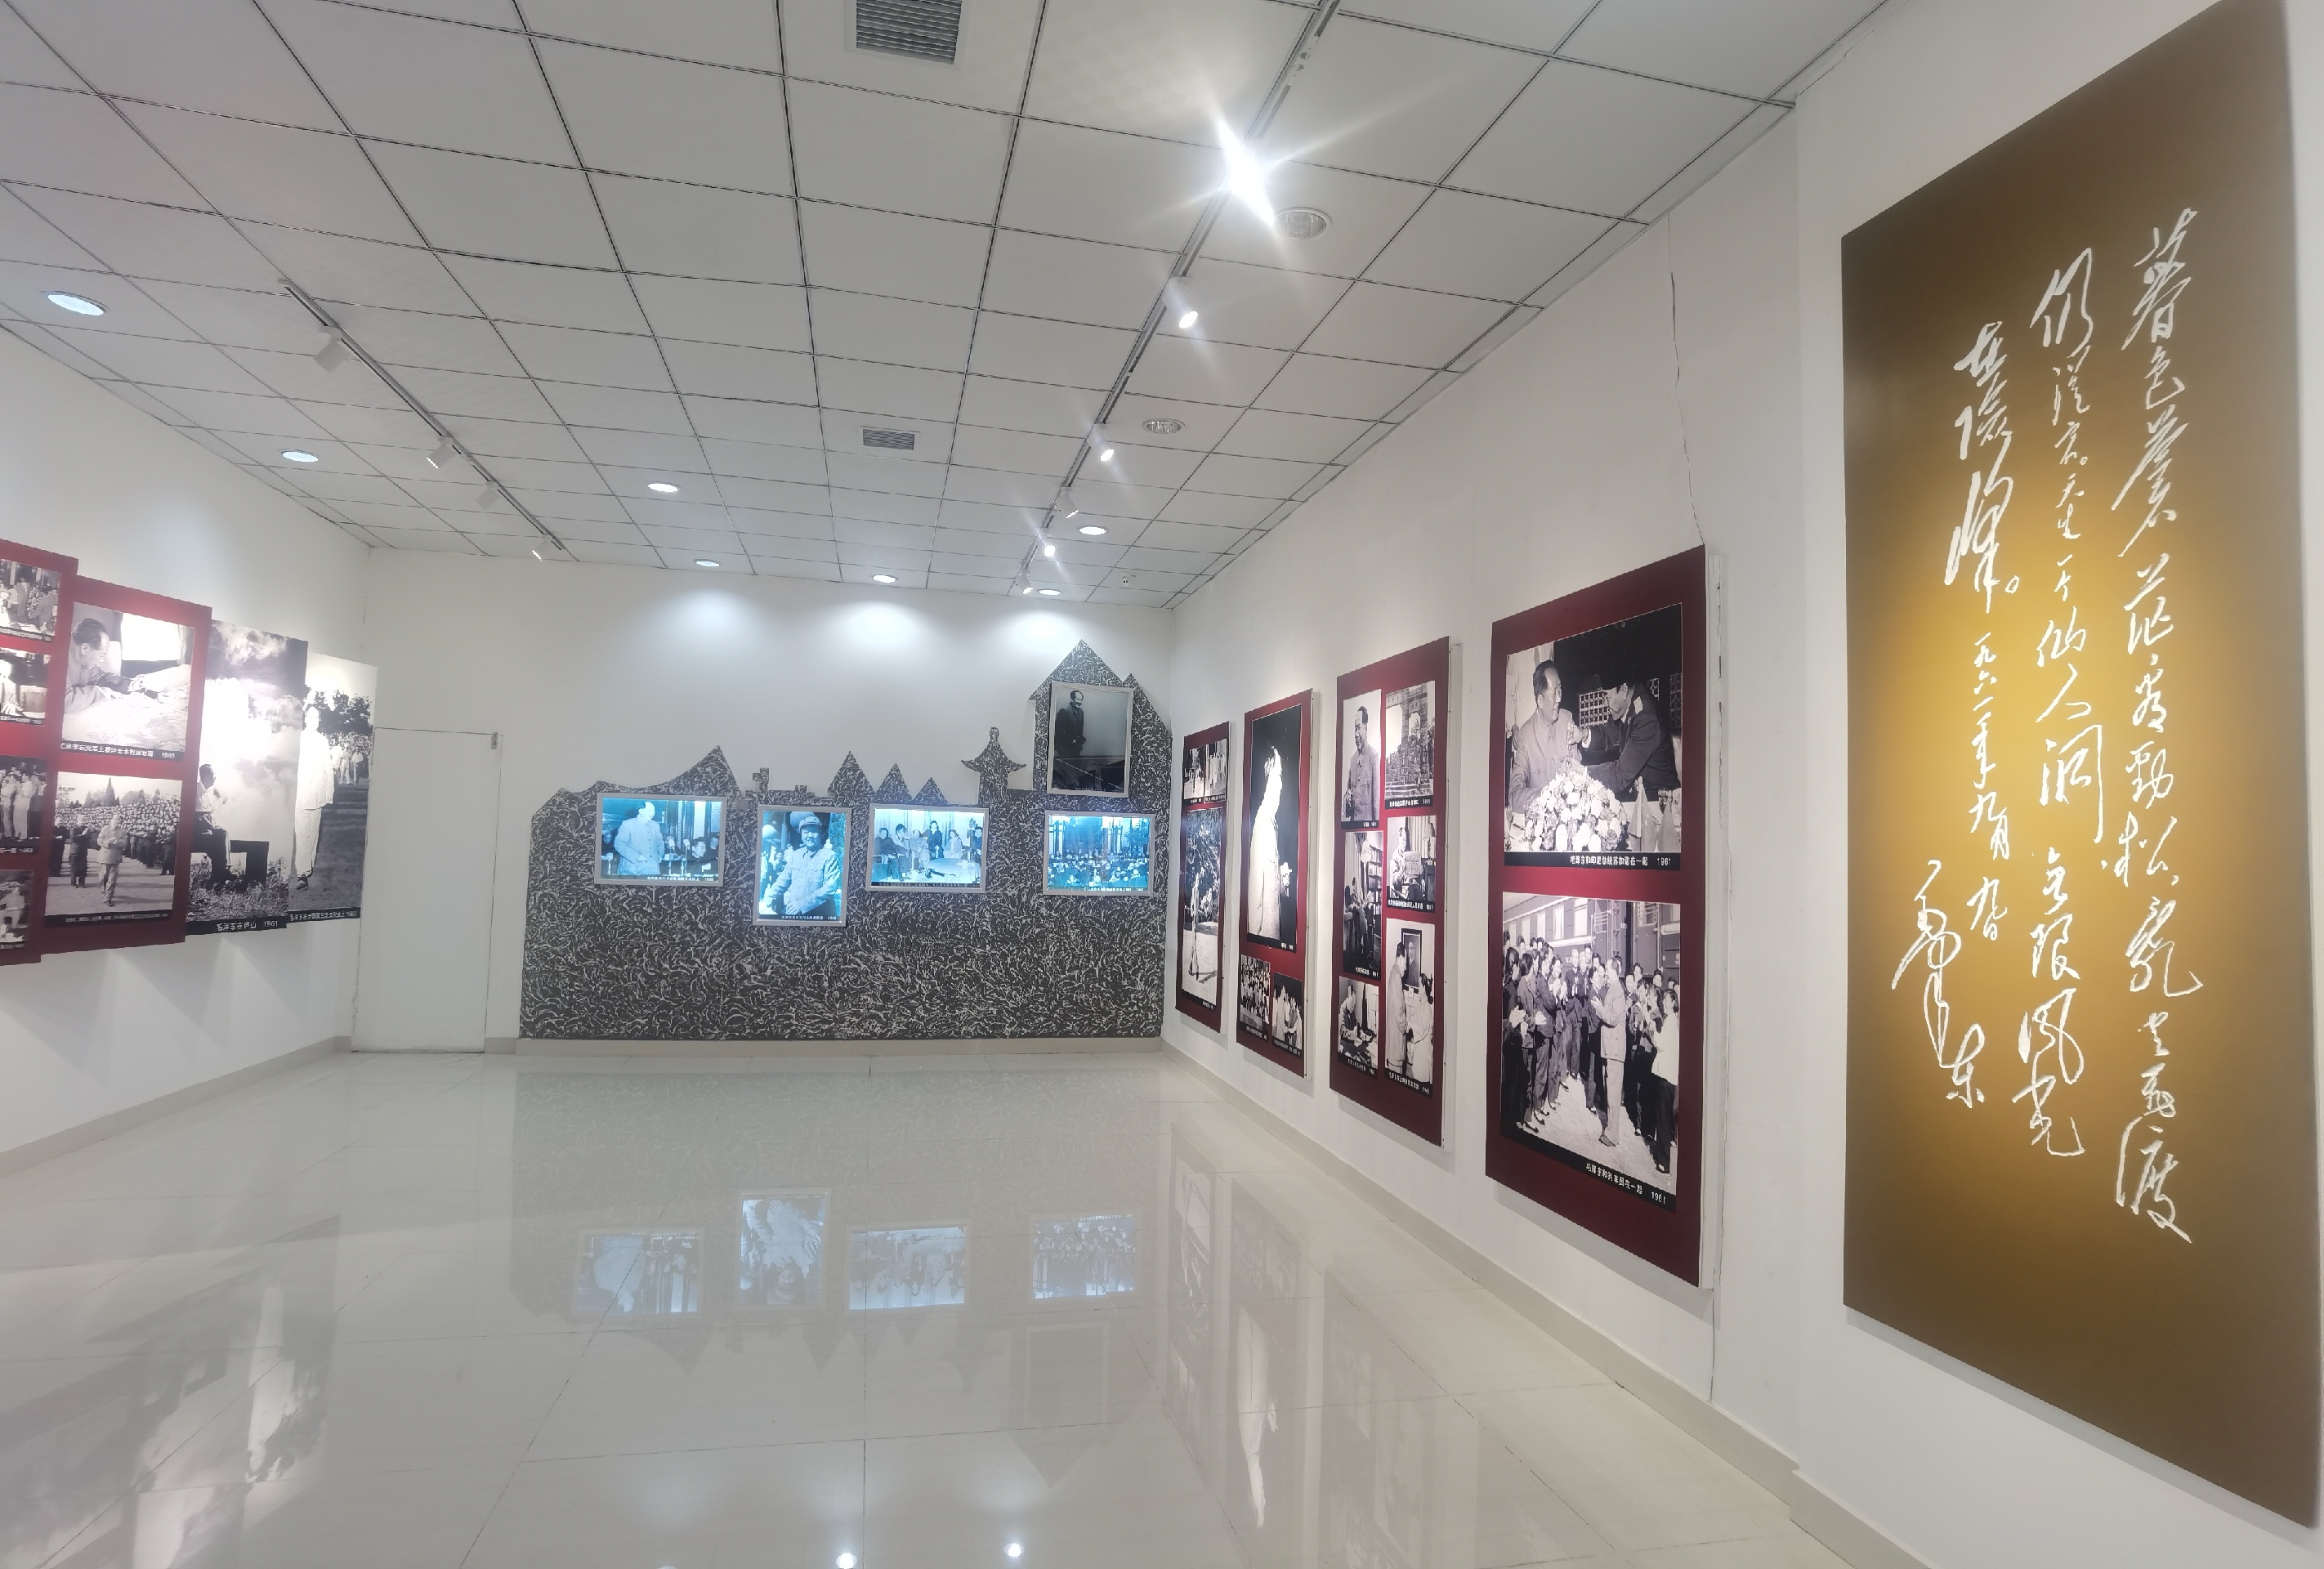 吕厚民摄影艺术馆——依兰竟然有这么个地方，好厉害，吕厚民先生是毛主席的摄影师